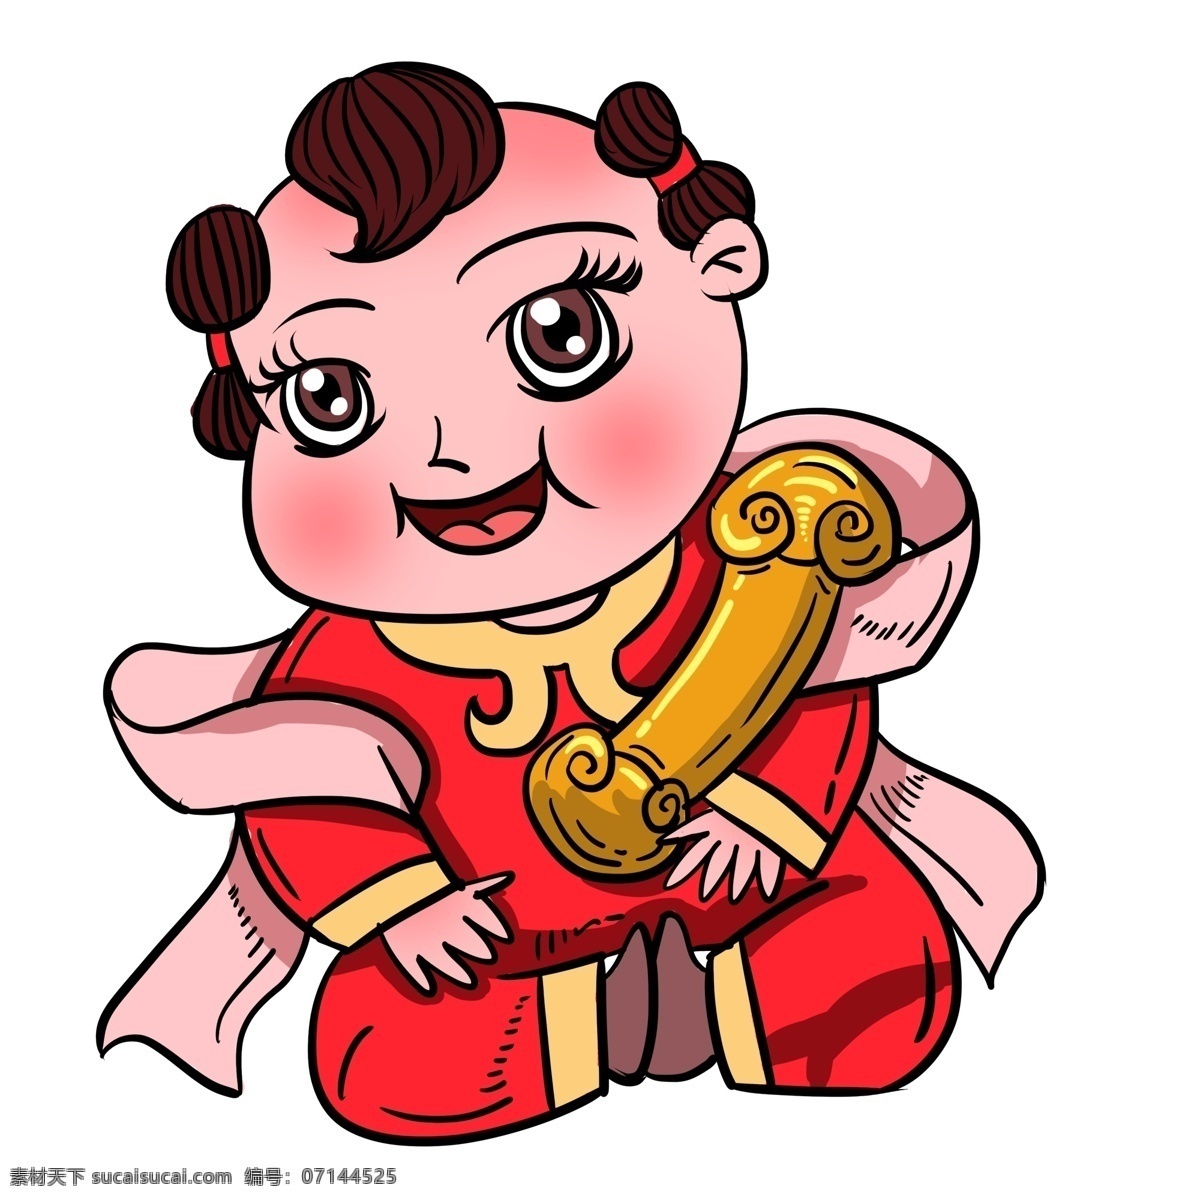 喜庆 玉 如意 年画 娃娃 创意 彩绘 中国风 插画 潮漫 年画娃娃 女娃 孩童 玉如意 年画元素 猪年 中国年